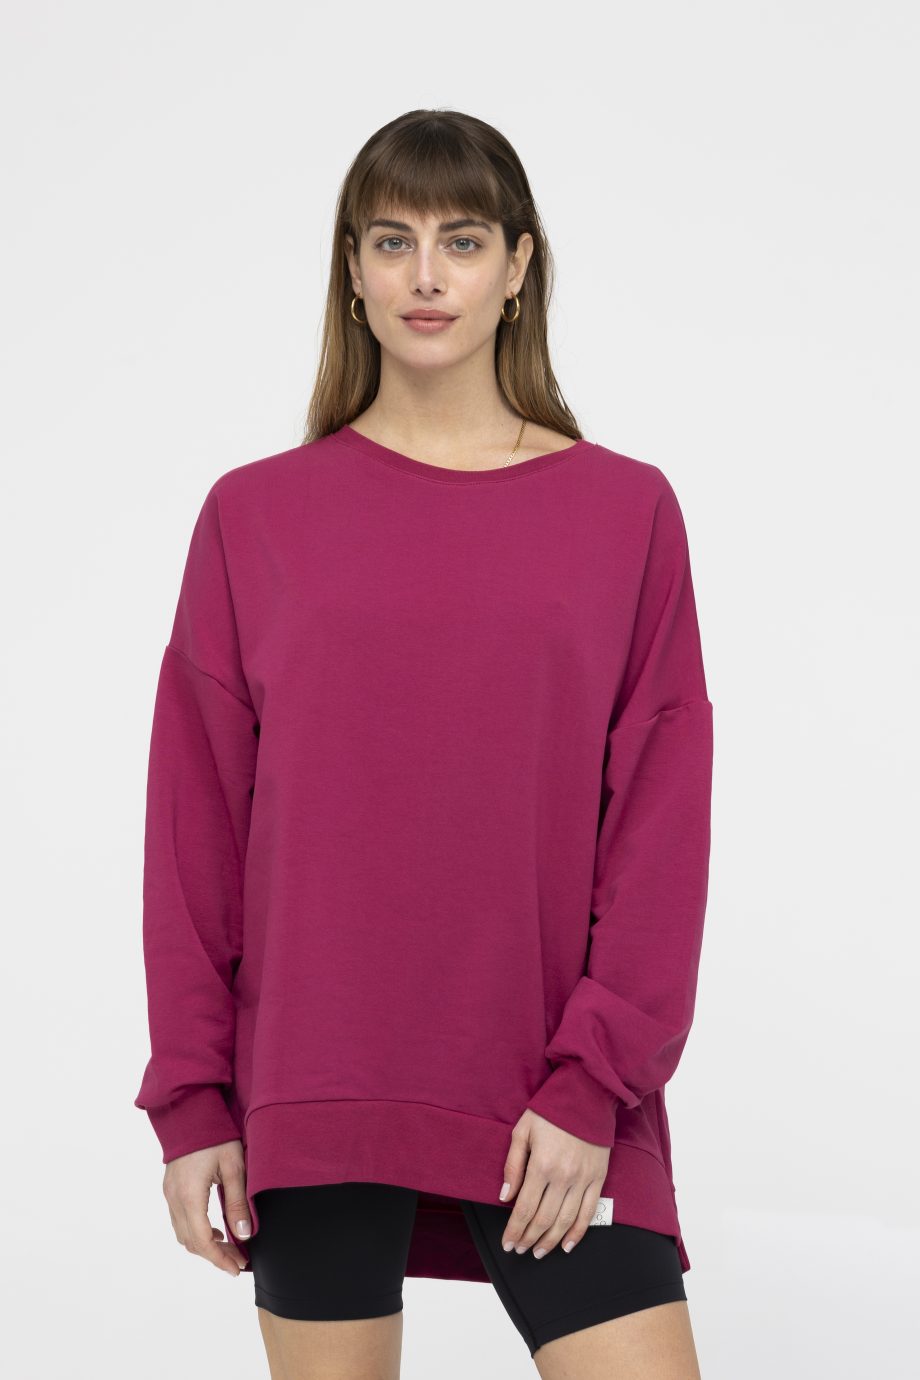 Φούτερ oversized Sweatshirt NOOS Pilates Wear